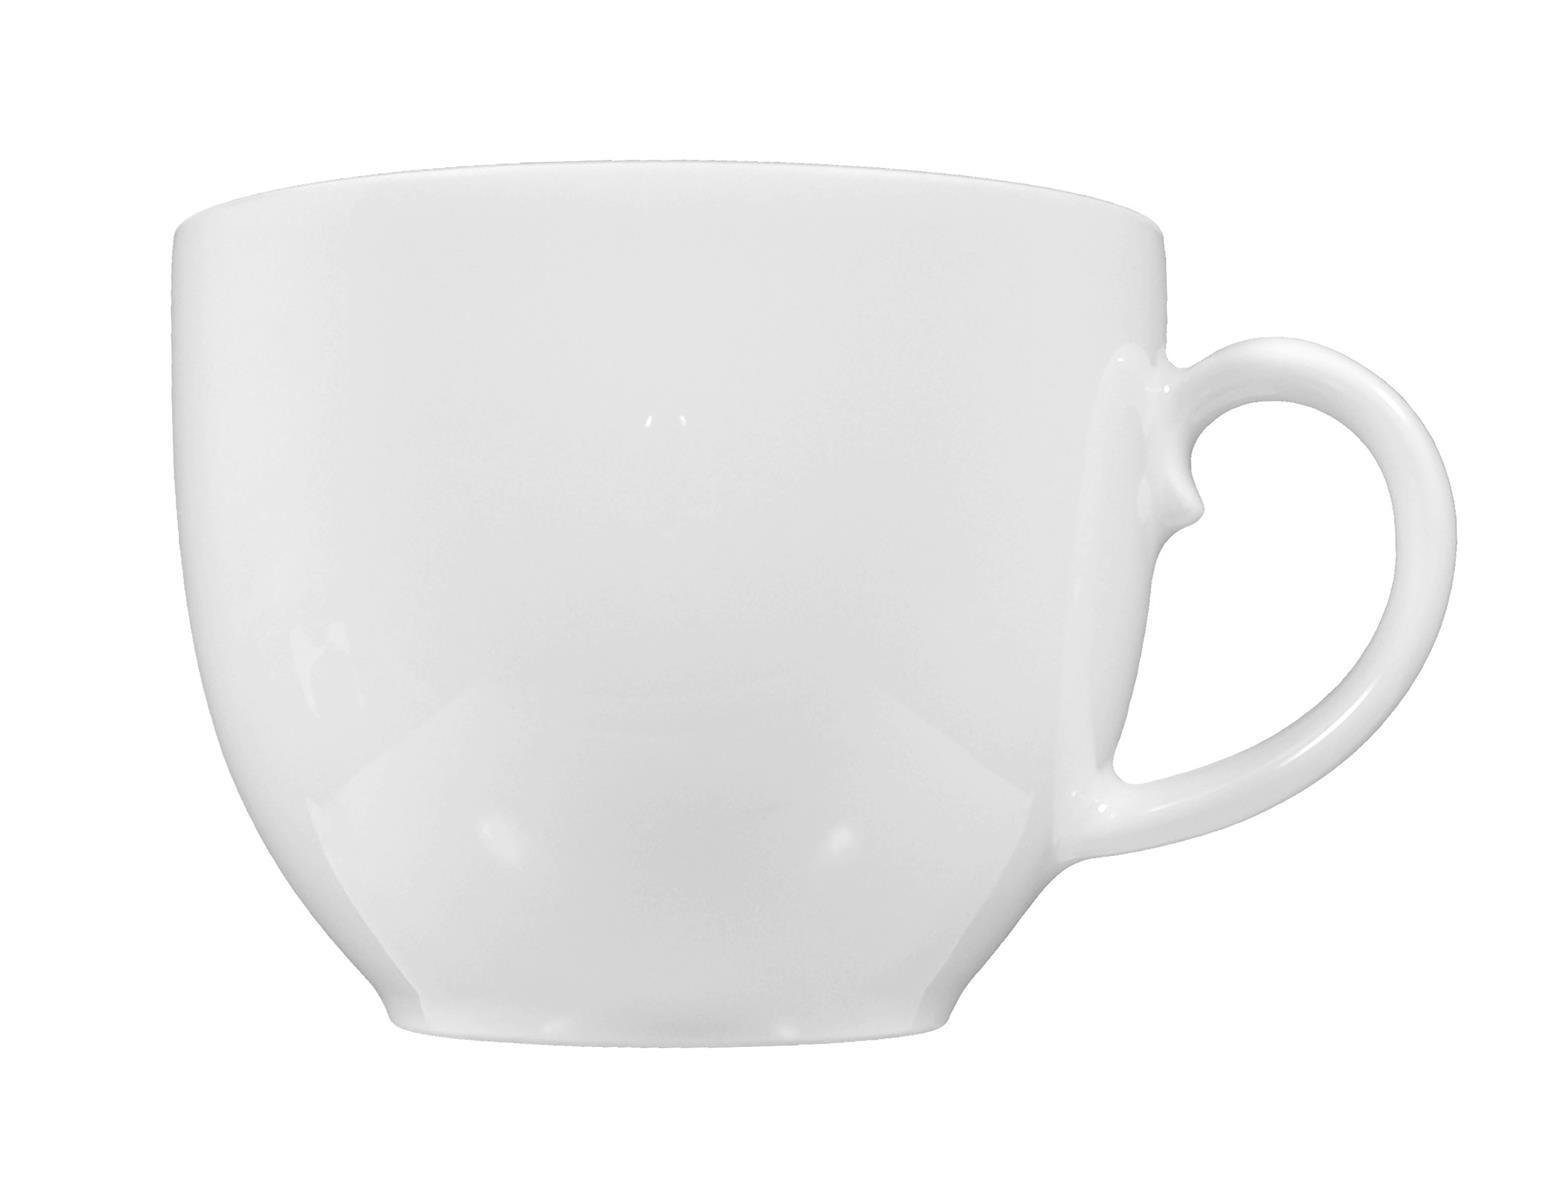 Seltmann Weiden Becher Porzellan Kaffee-Obere weiß 0,21l, Rondo/Liane Seltmann Weiden